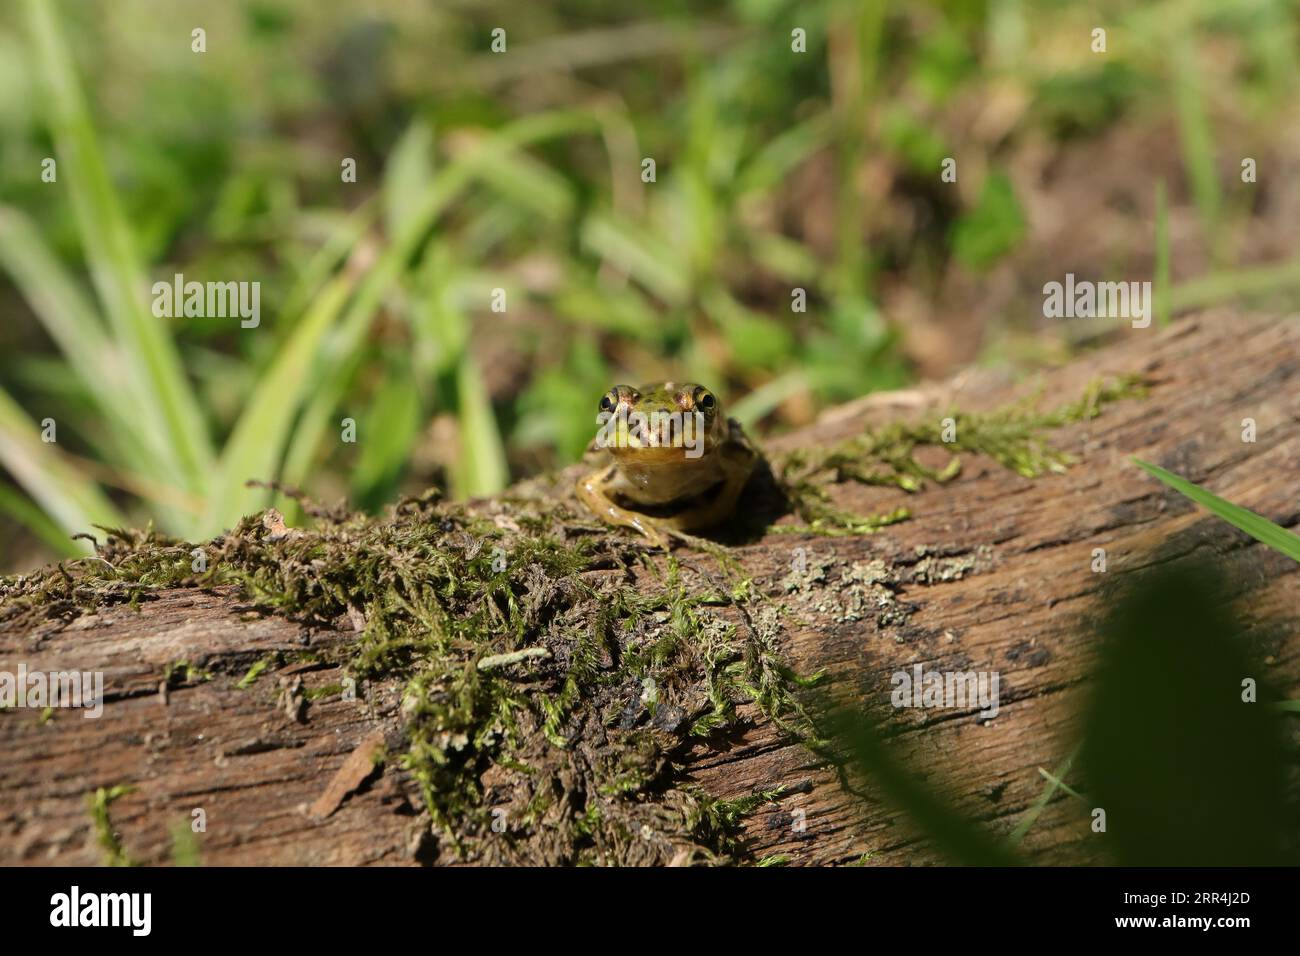 Junger grüner Frosch auf einem Baumstamm (Pelophylax kl. Eskulentus) --- Jeune grenouille verte sur un tronc d'arbre (Pelophylax kl. Eskulentus) Stockfoto